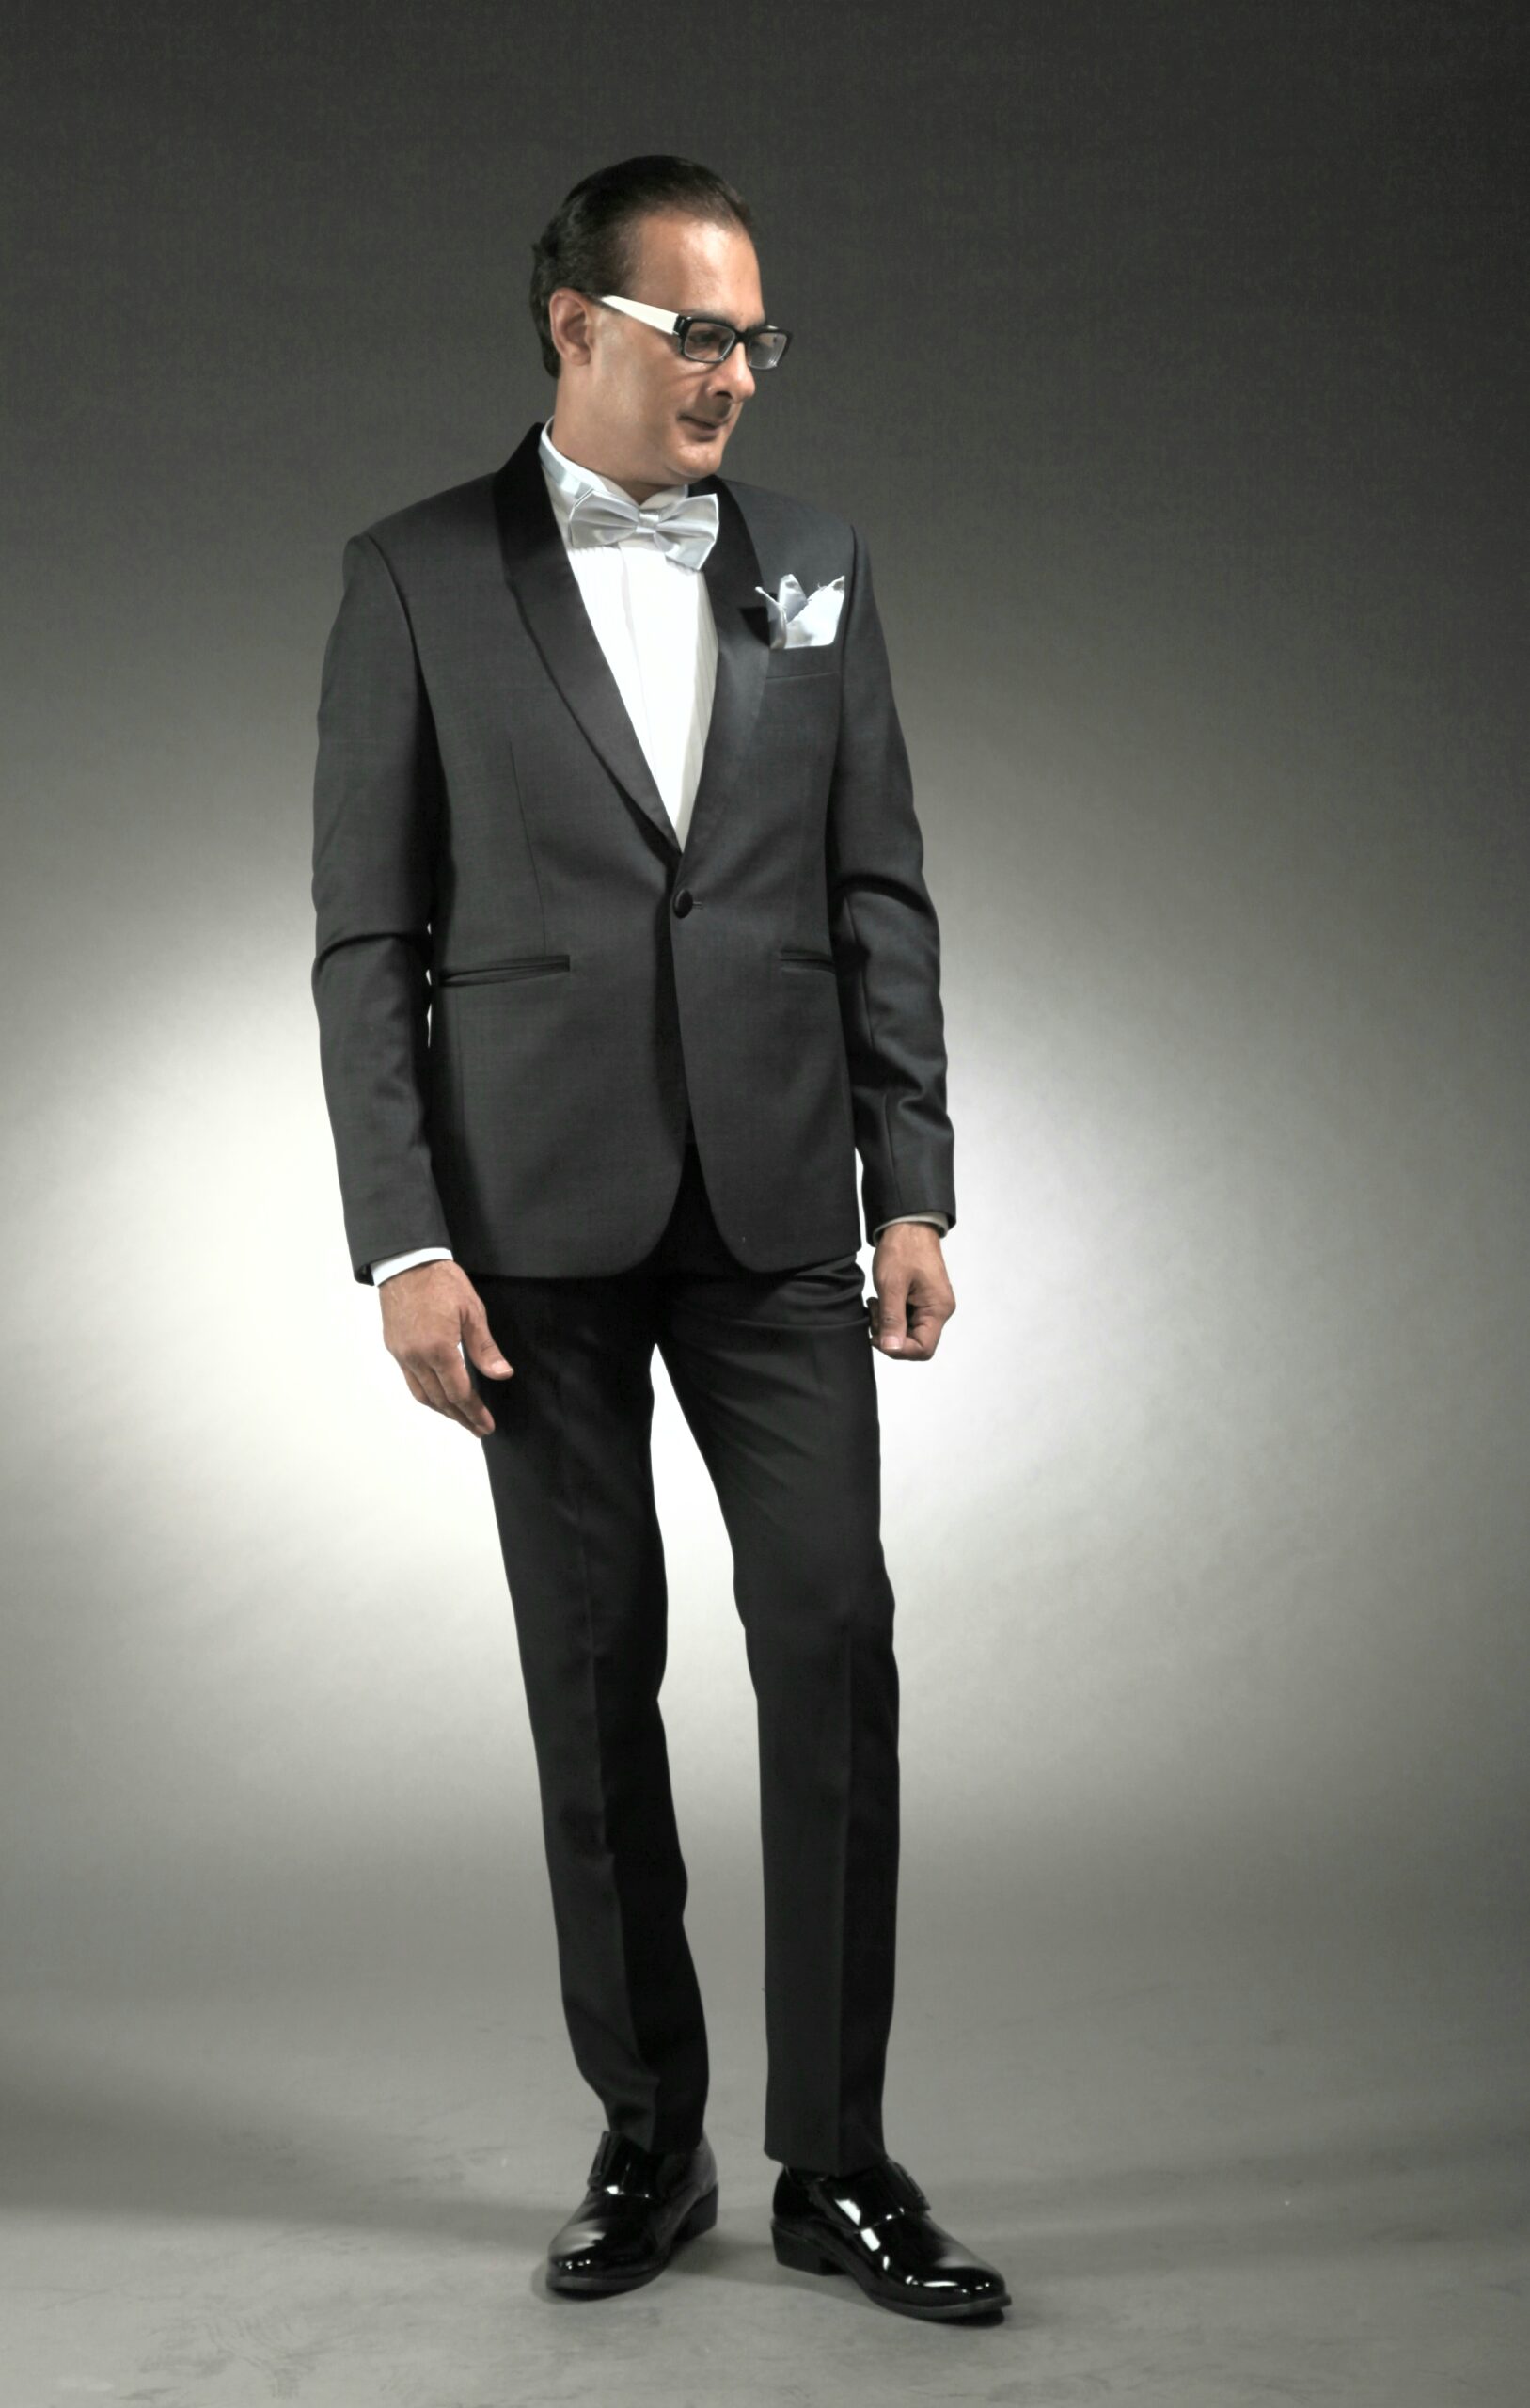 MST-5029-03-rent_rental_hire_tuxedo_suit_black_tie_suit_designer_suits_shop_tailor_tailors_singapore_wedding